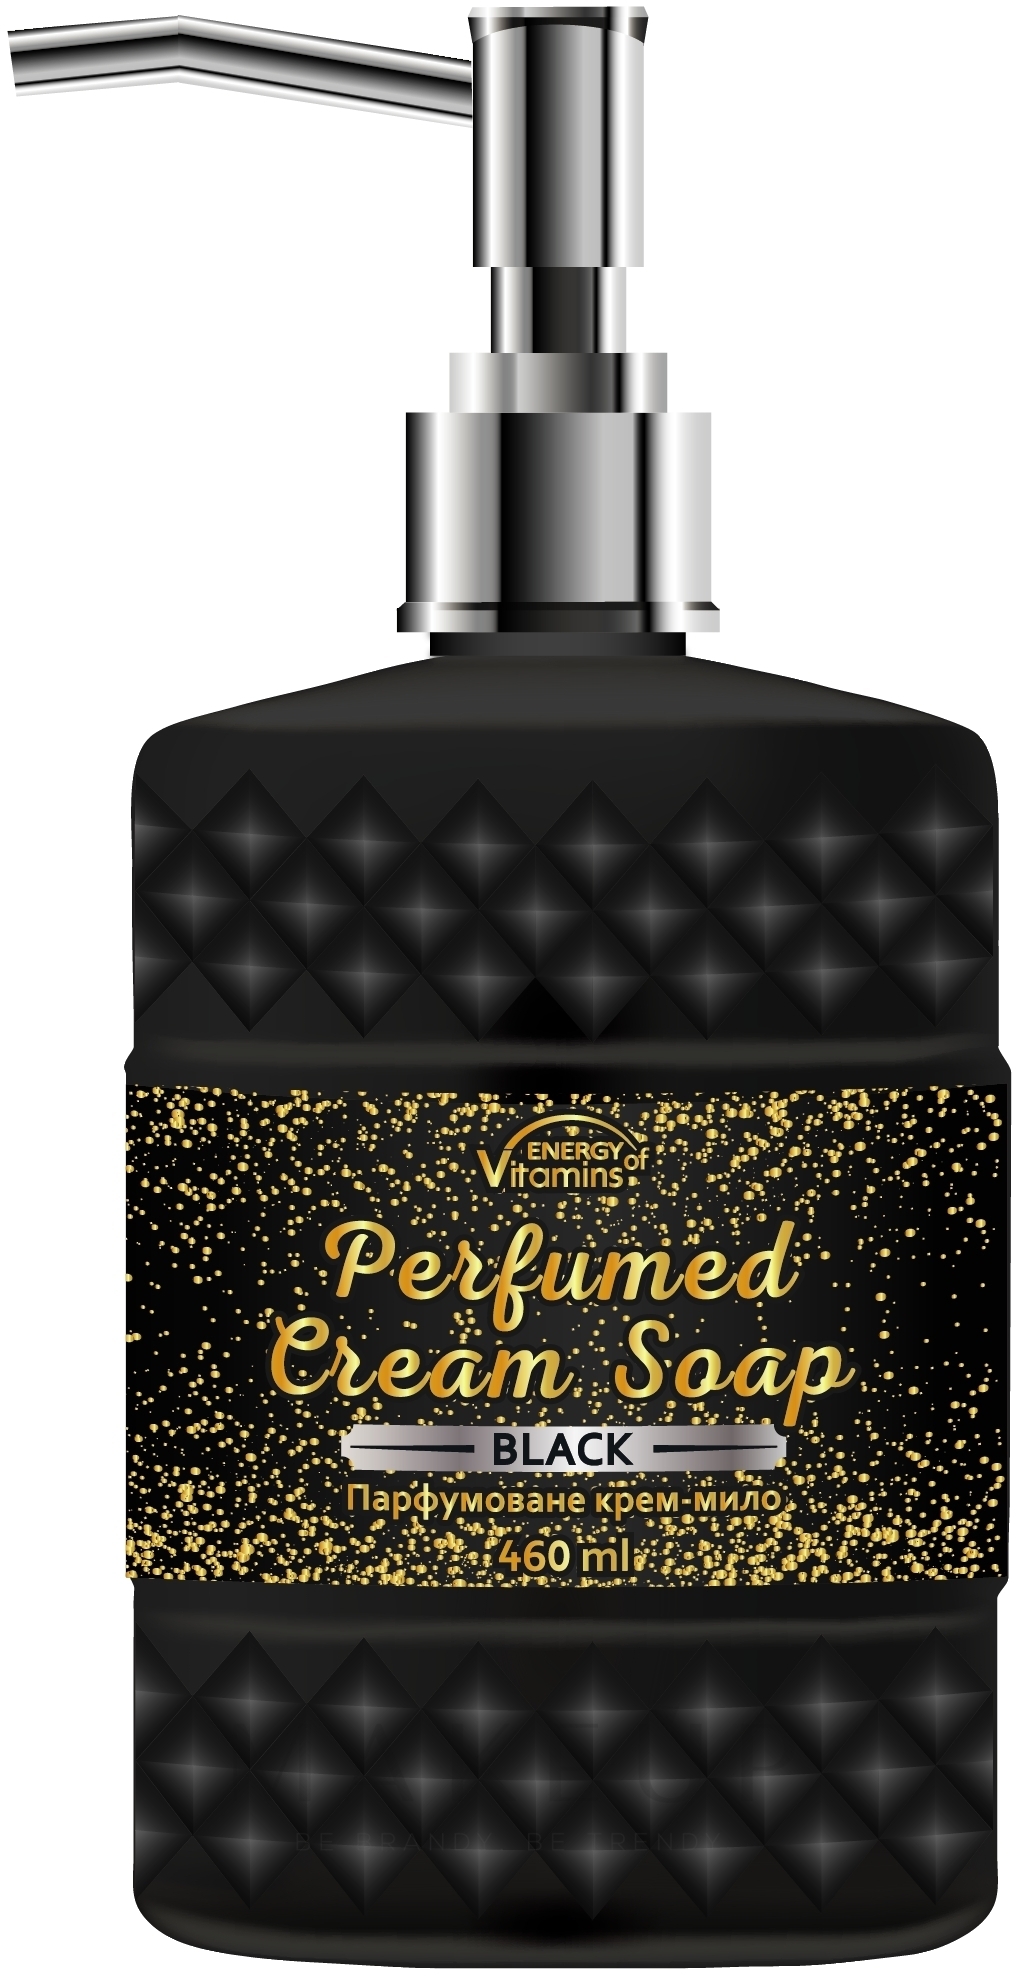 Parfümierte Creme-Seife für den Körper Black - Energy of Vitamins Perfumed Cream Soap — Bild 460 ml